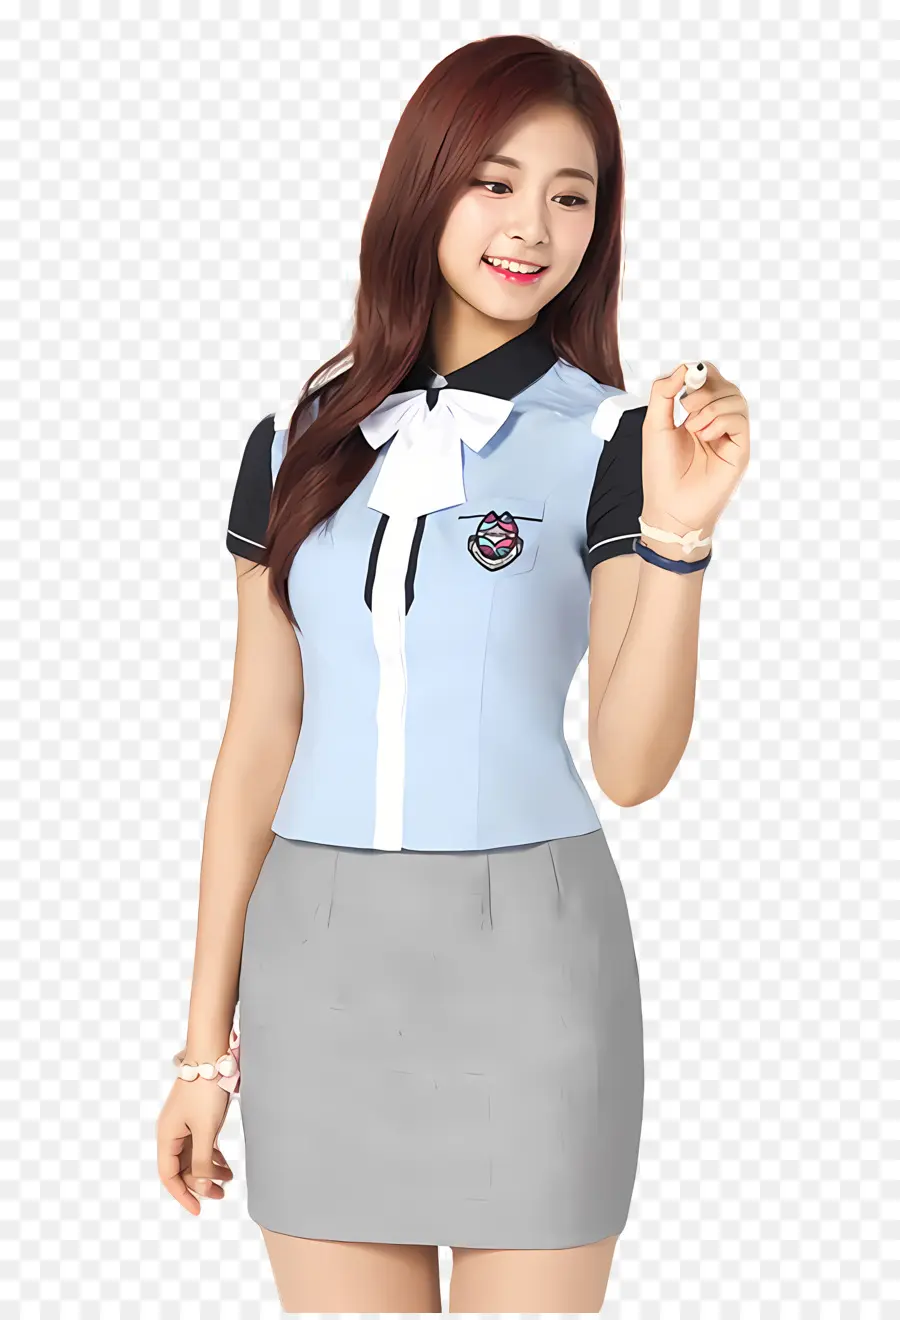 Scuola uniforme - Ragazza sorridente in uniforme scolastica blu